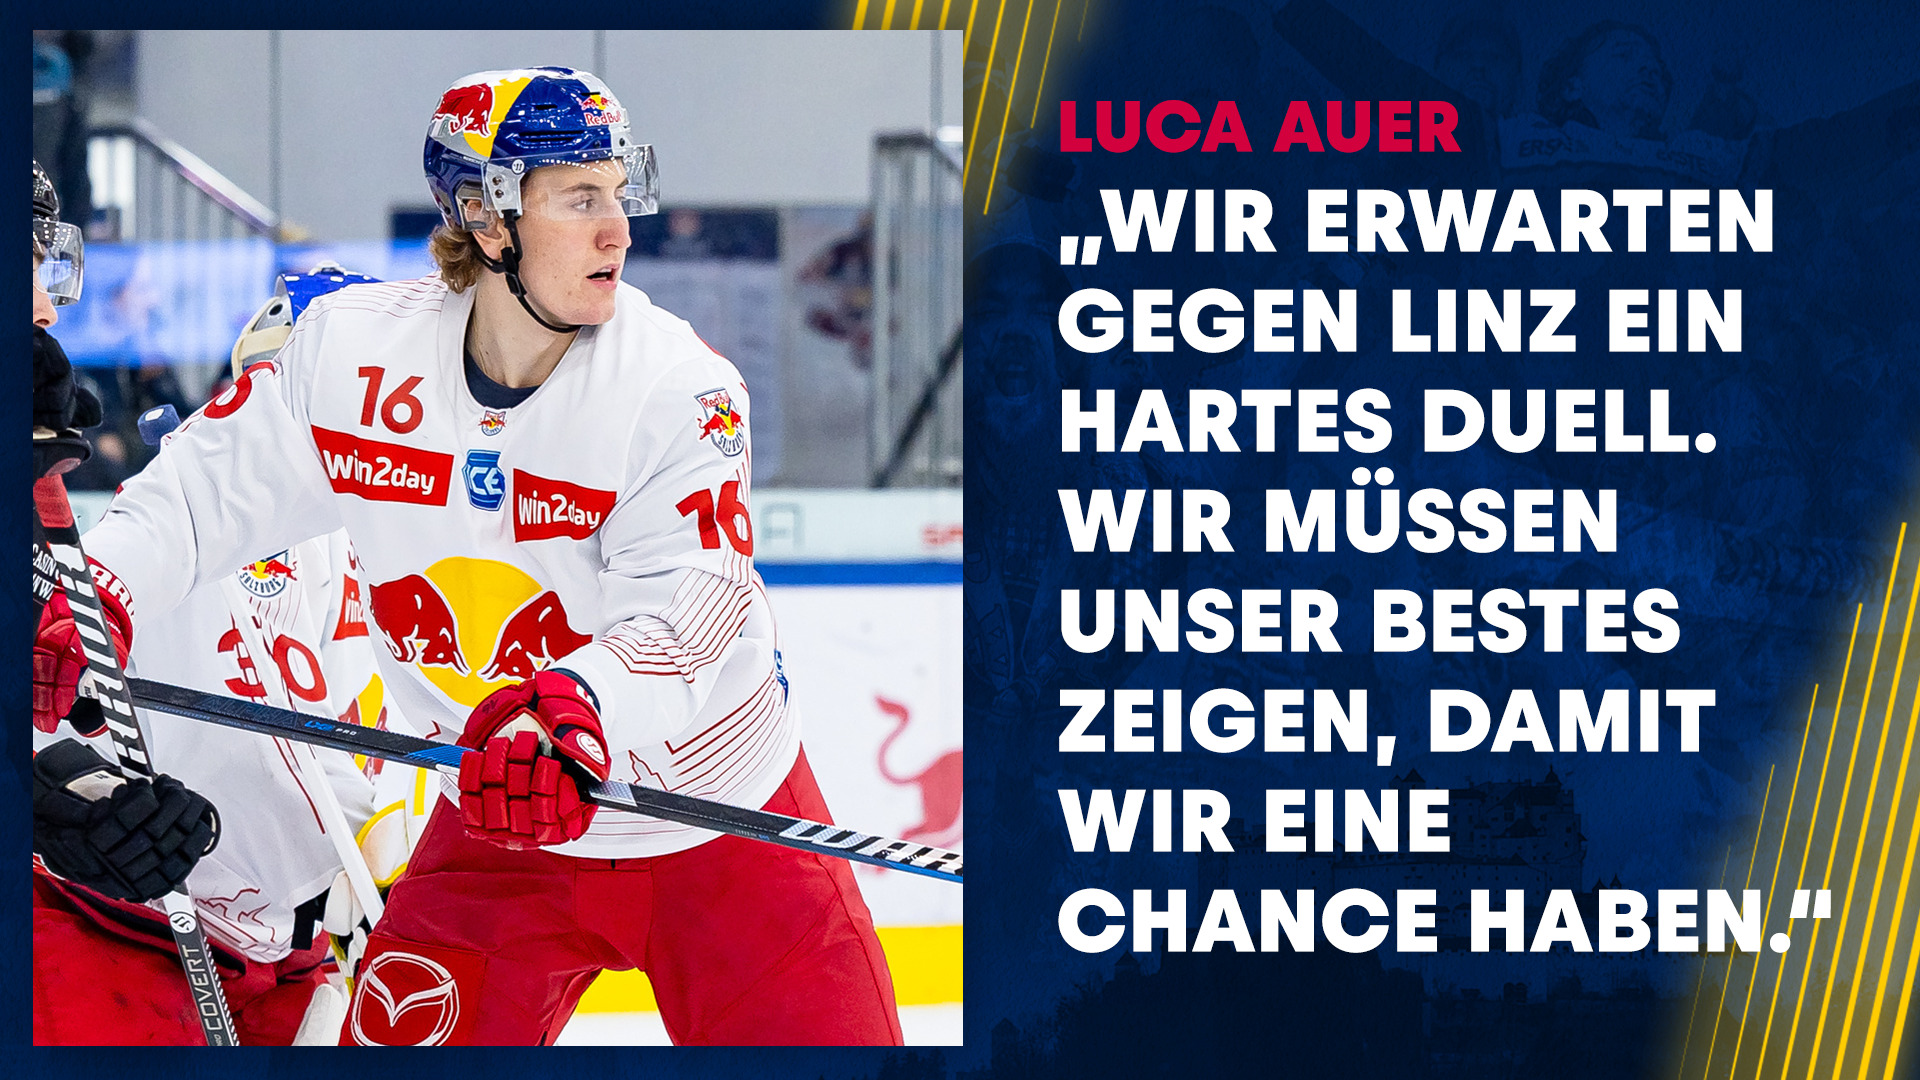 Statement: Luca Auer